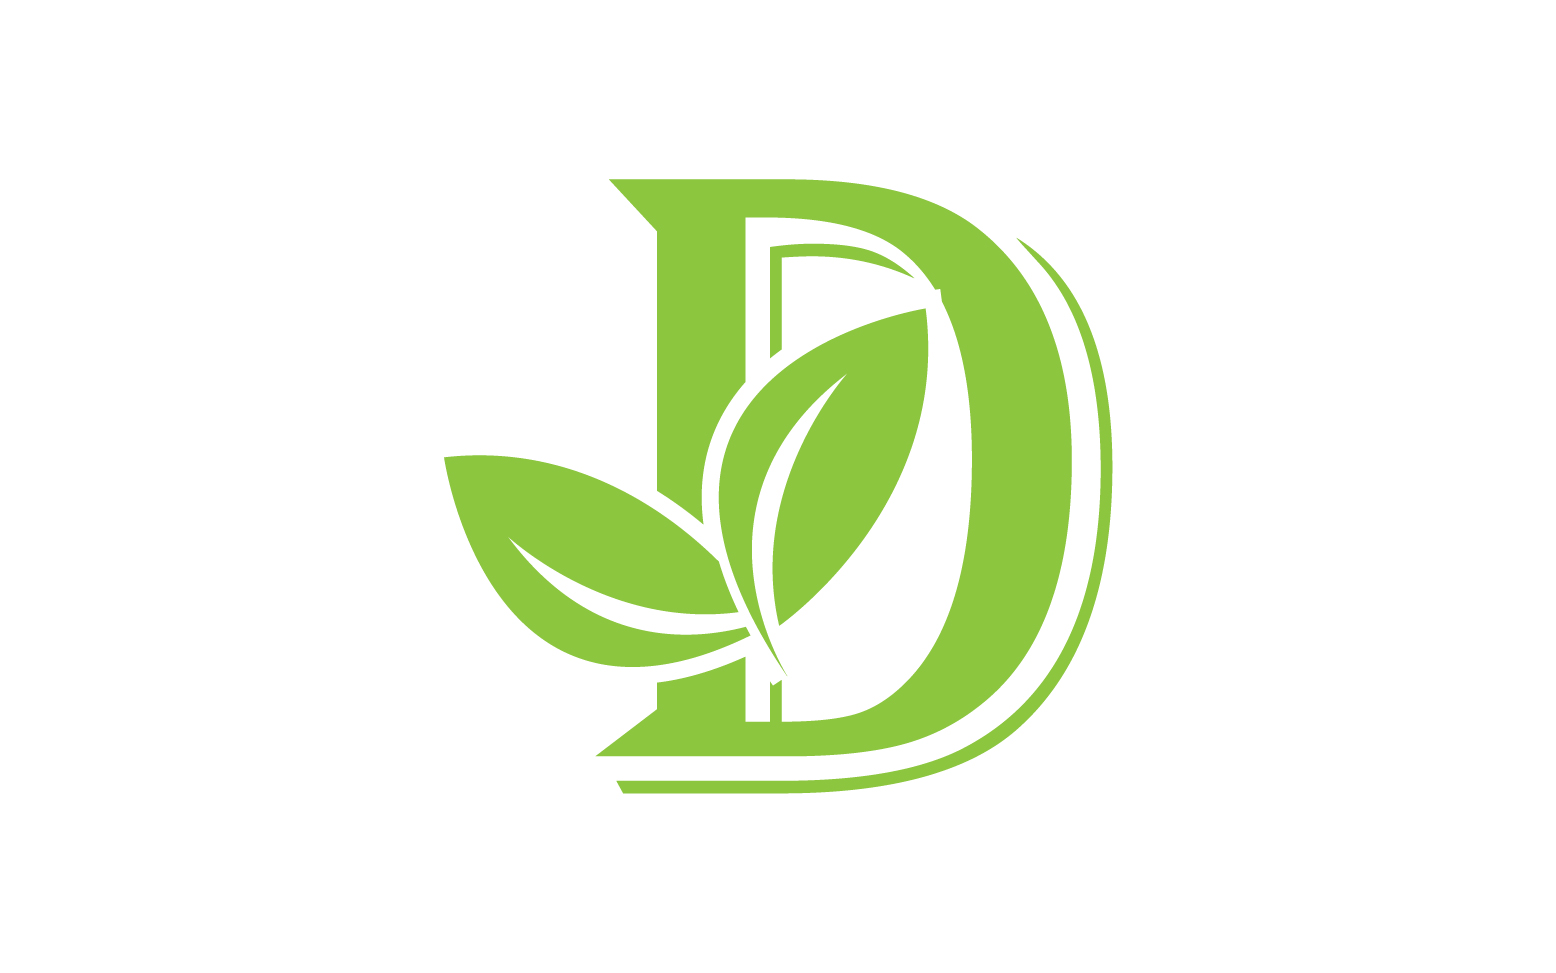 D letter logo leaf green vector version v 57